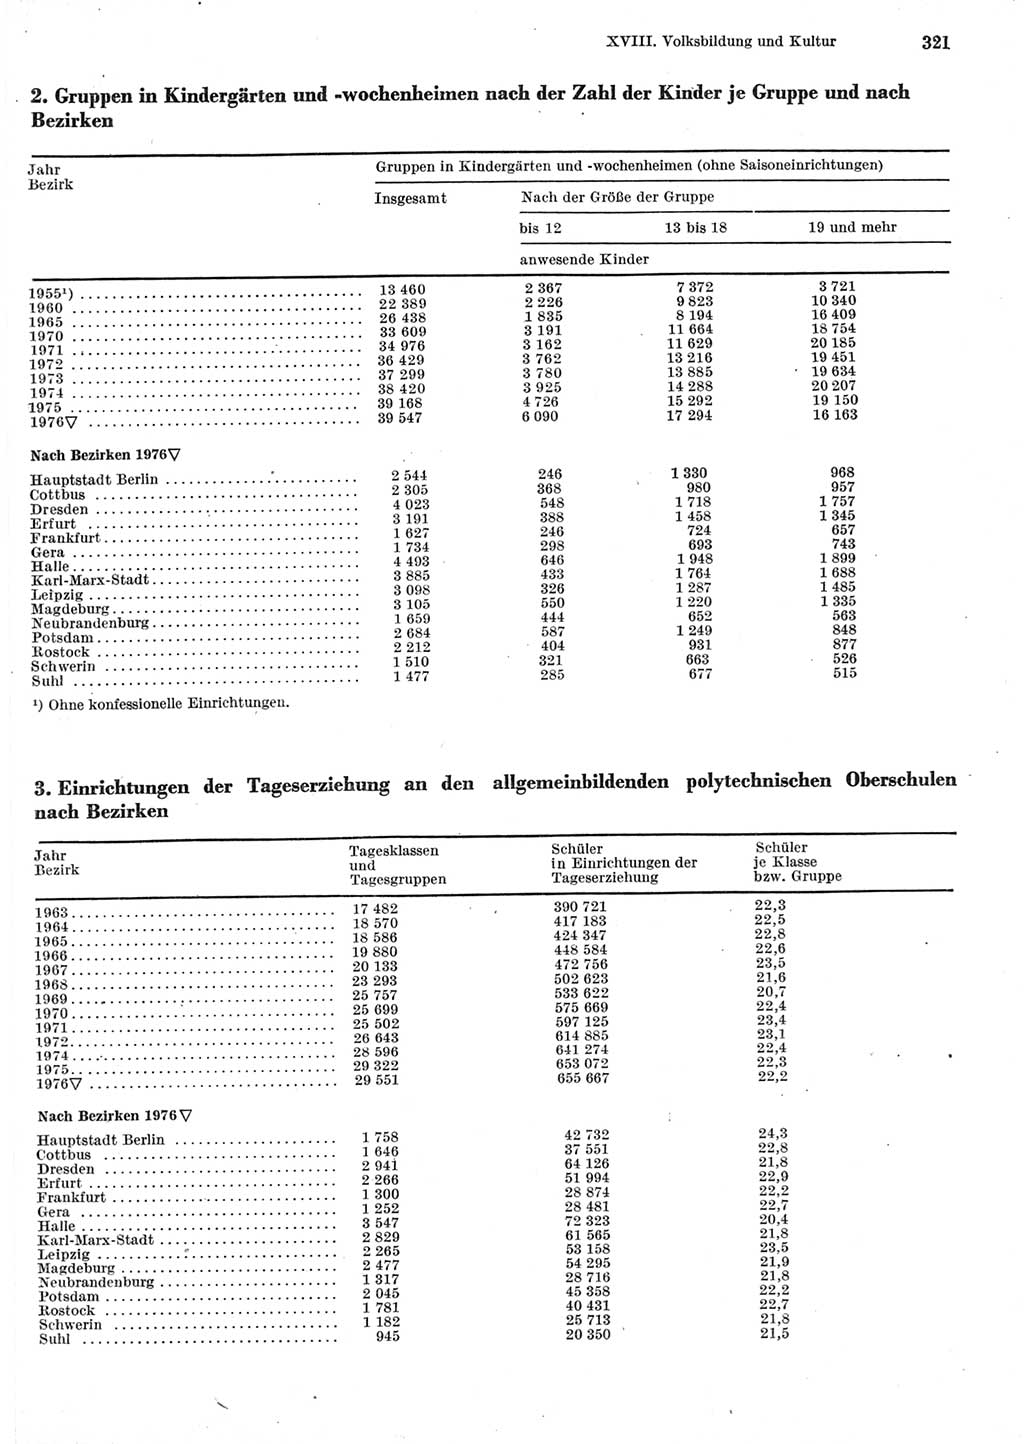 Statistisches Jahrbuch der Deutschen Demokratischen Republik (DDR) 1977, Seite 321 (Stat. Jb. DDR 1977, S. 321)